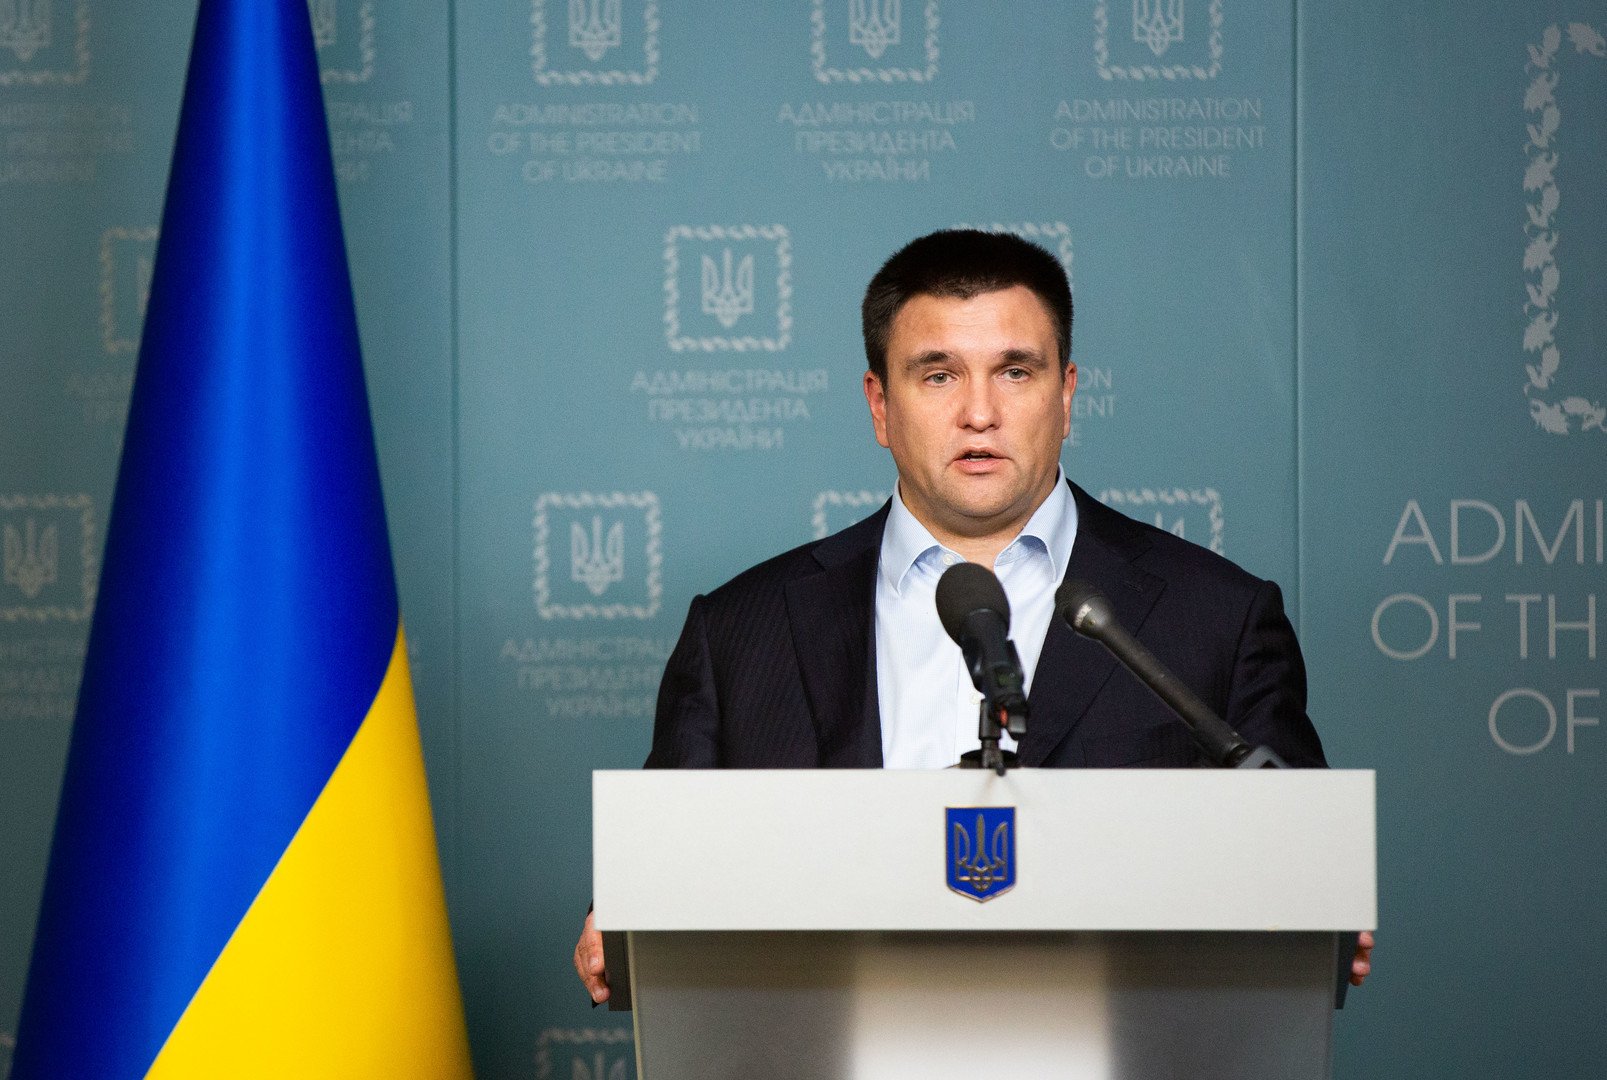 وزير الخارجية الأوكراني بافيل كليمكين يعلن على الهواء استقالته من منصبه